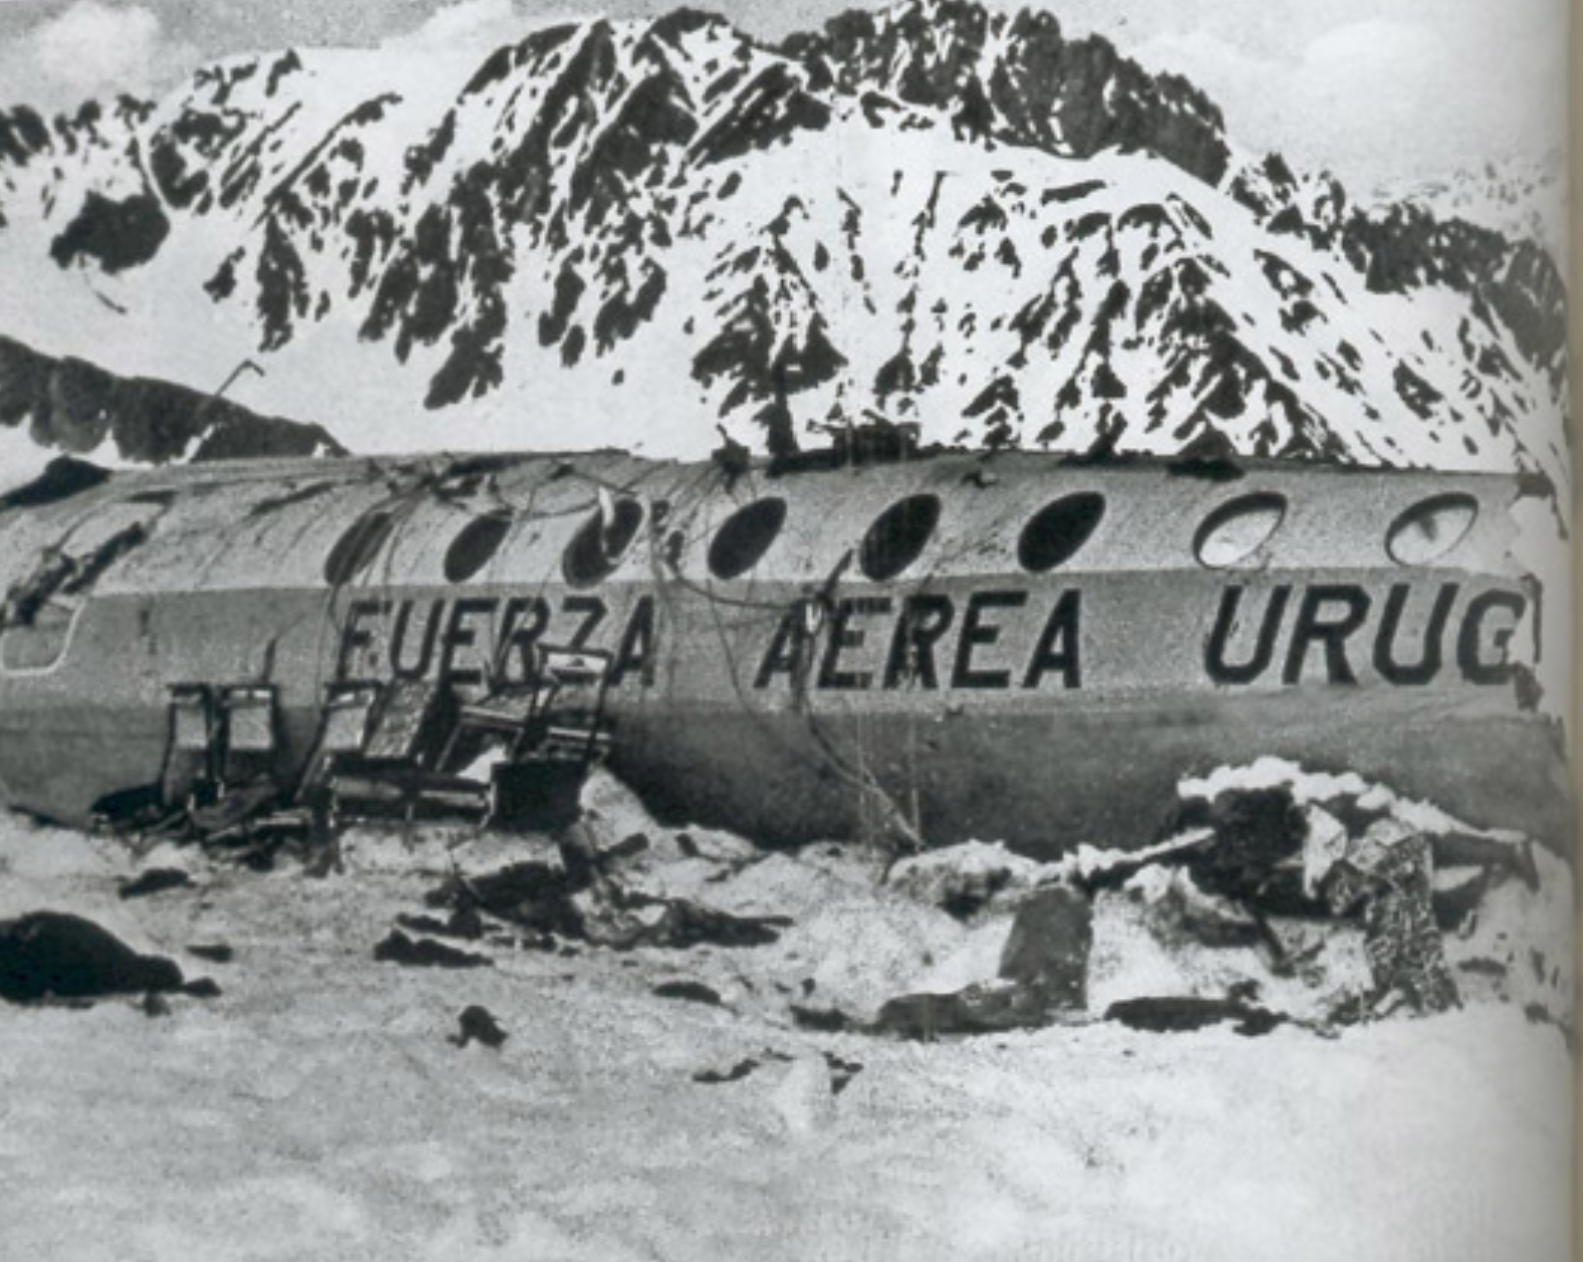 Про авиакатастрофу в андах. Рейс 571 уругвайских ВВС В Андах. 13 Октября 1972 года чудо в Андах.